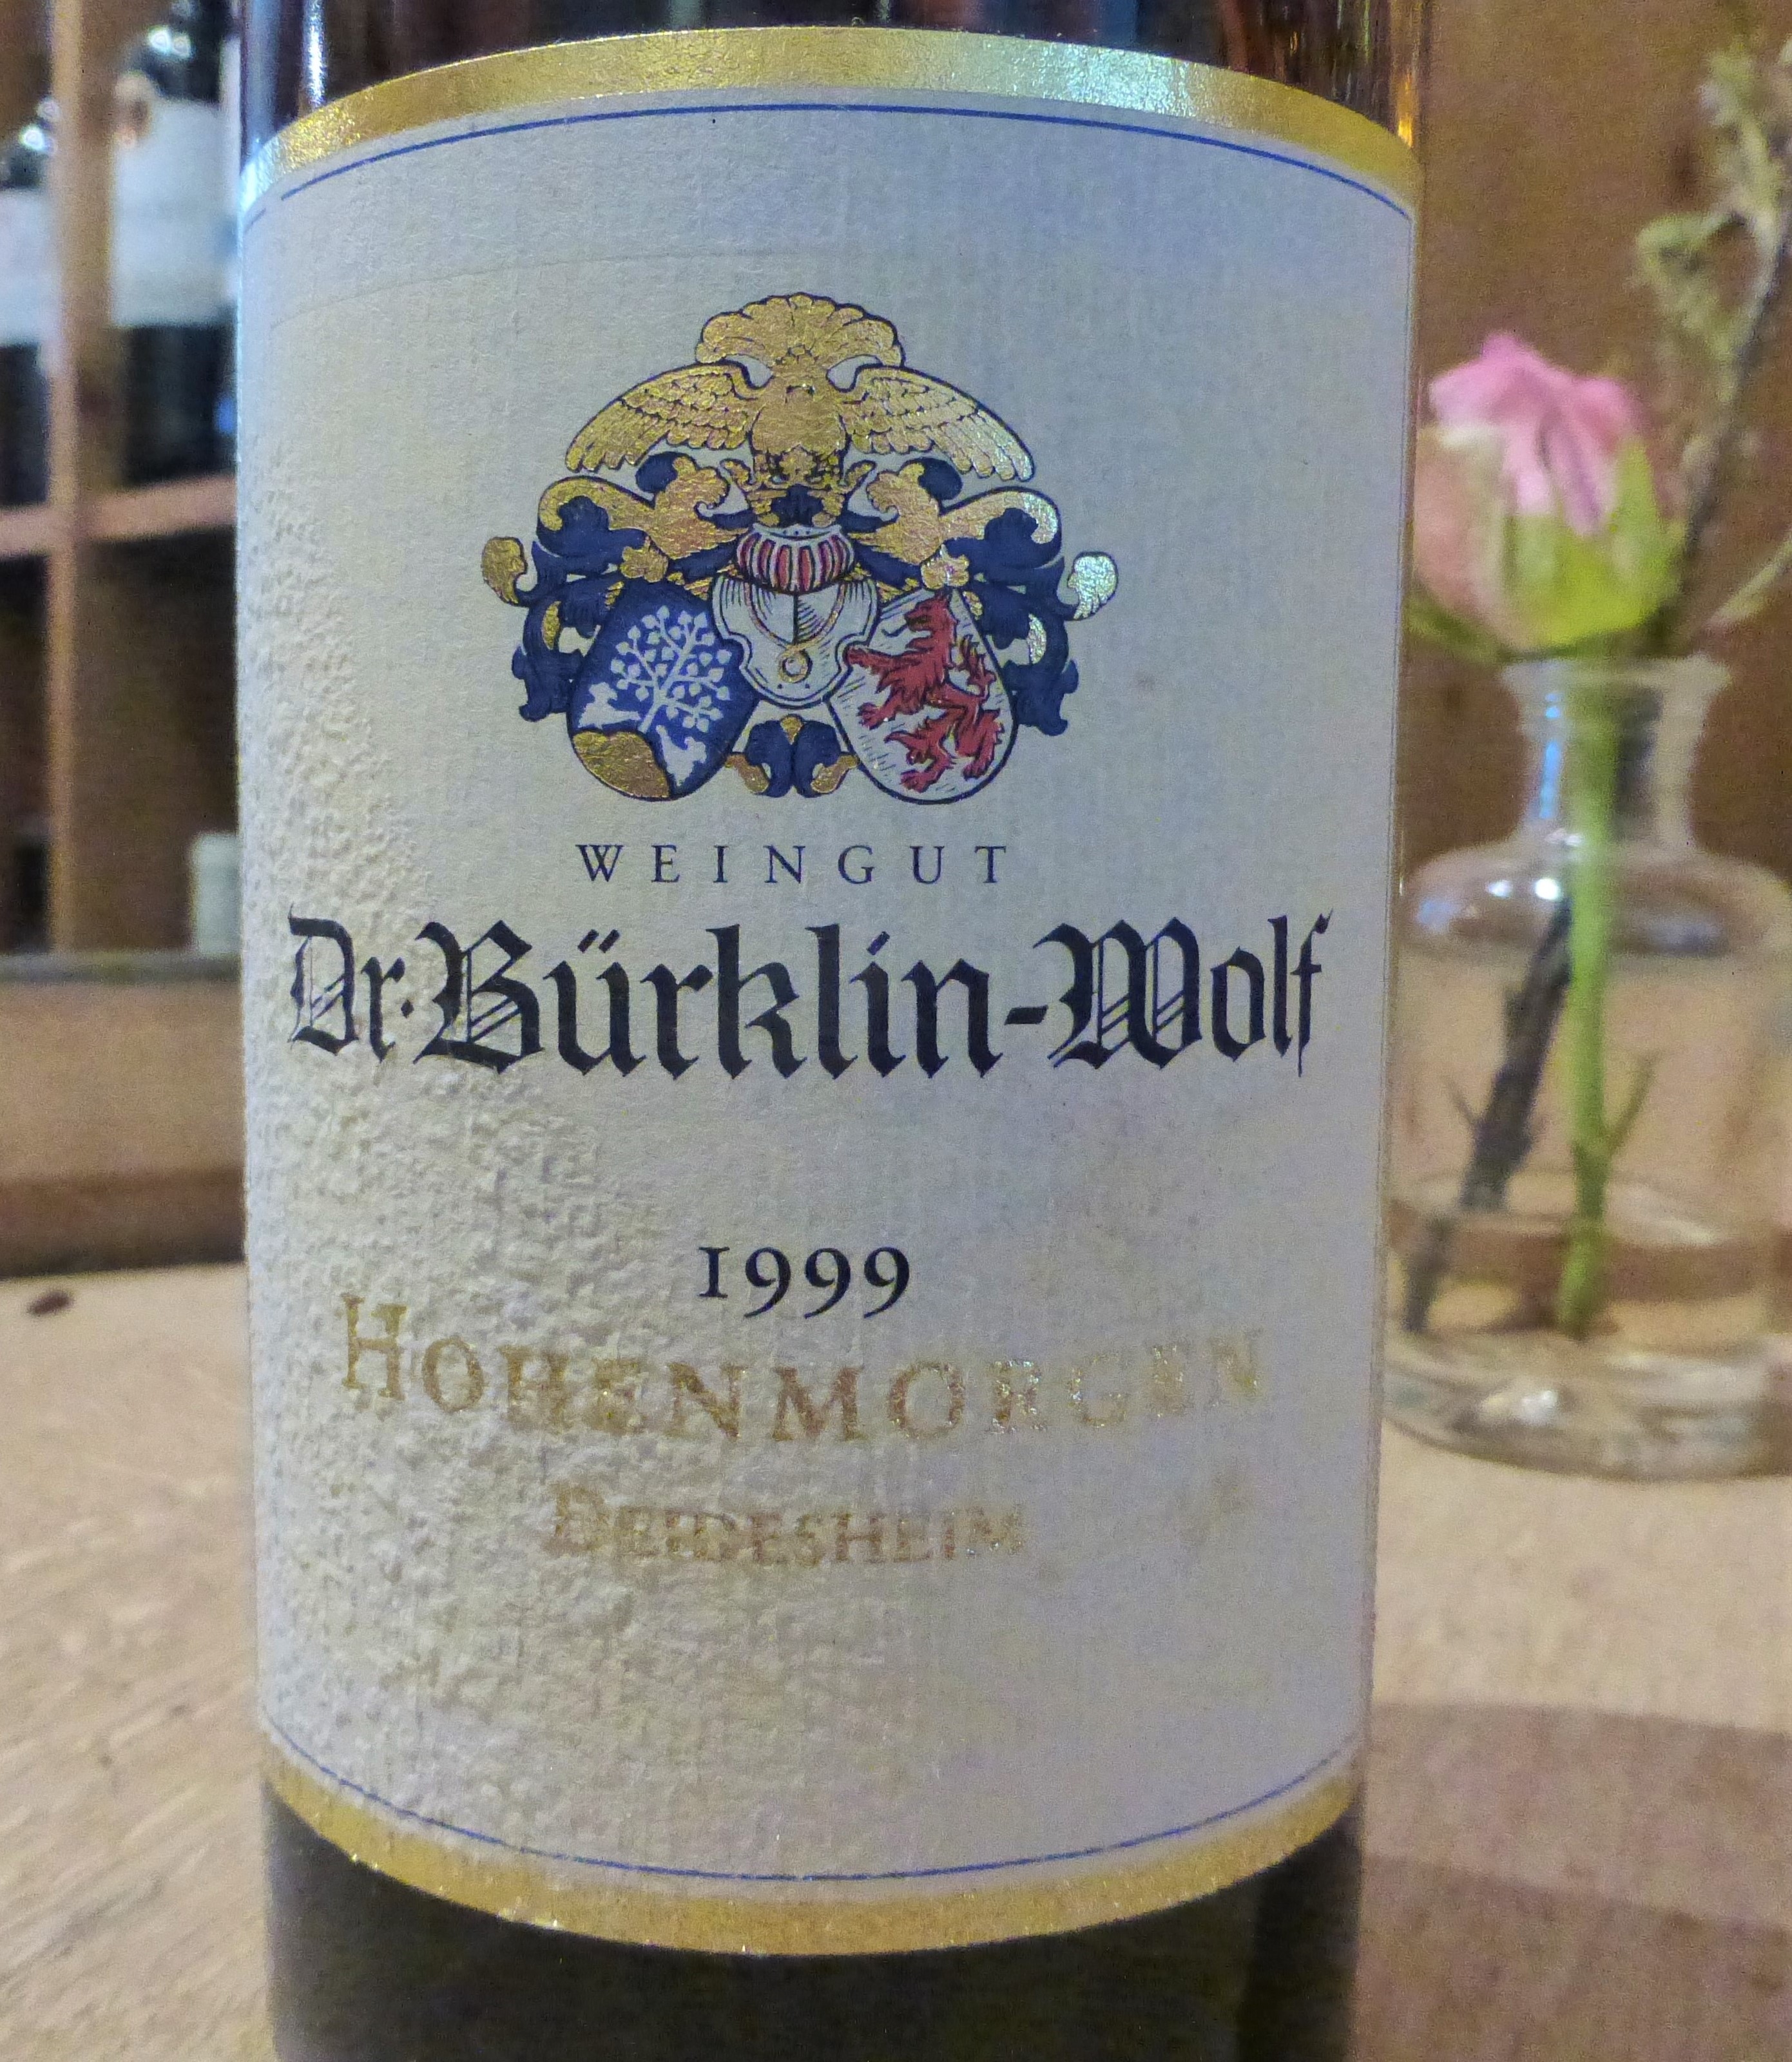 1999 Deidesheimer Hohenmorgen Riesling Spätlese trocken, Weingut Dr.Bürklin-Wolf